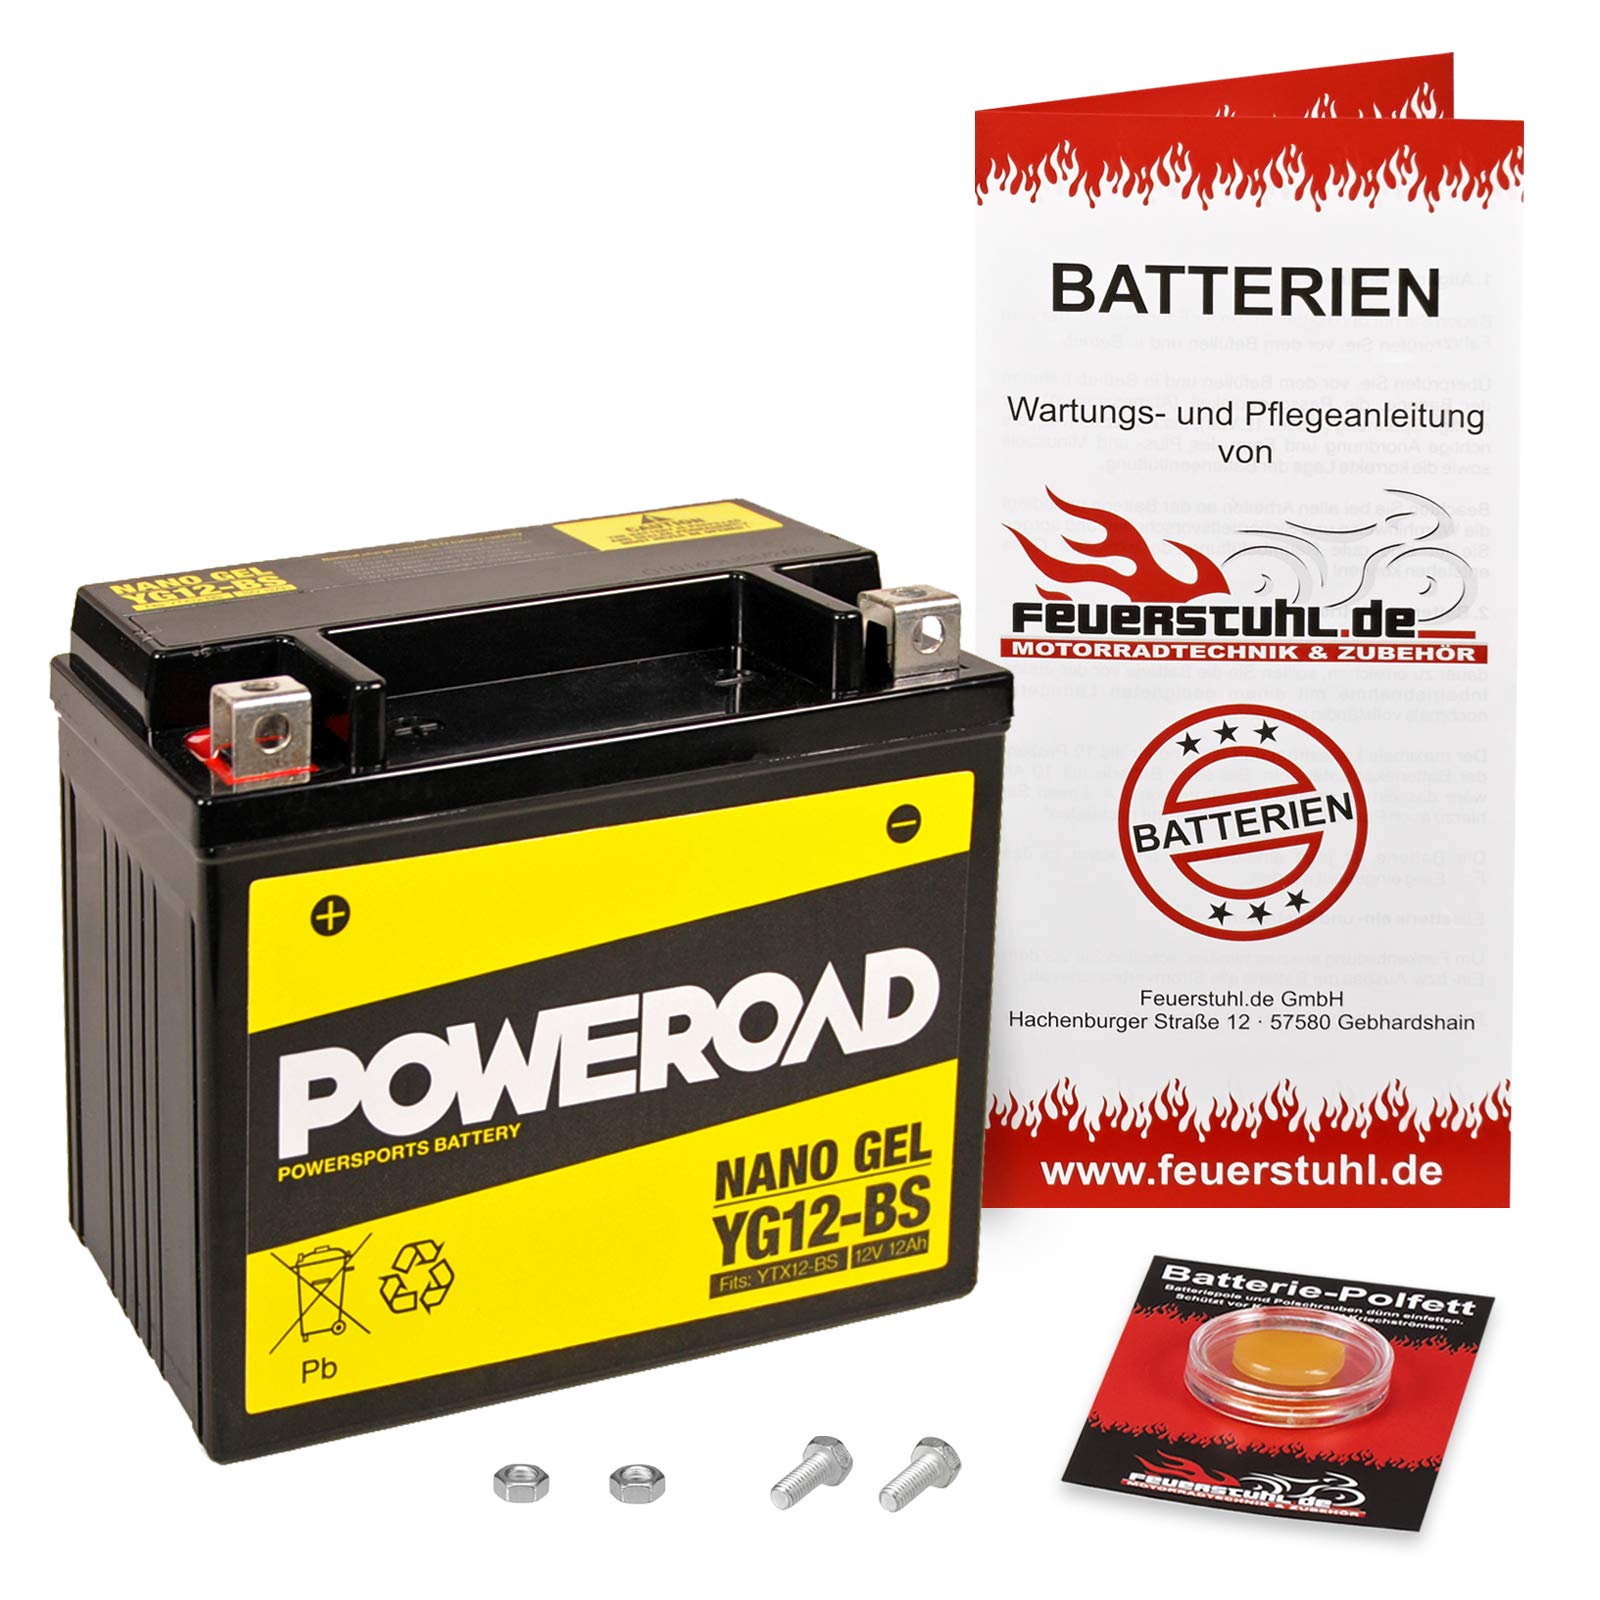 Gel-Batterie für Suzuki V-Strom 650, 2012-2018 (C7) wartungsfrei, einbaufertig, startklar, inkl. 7,50€ Pfand von Feuerstuhl.de GmbH